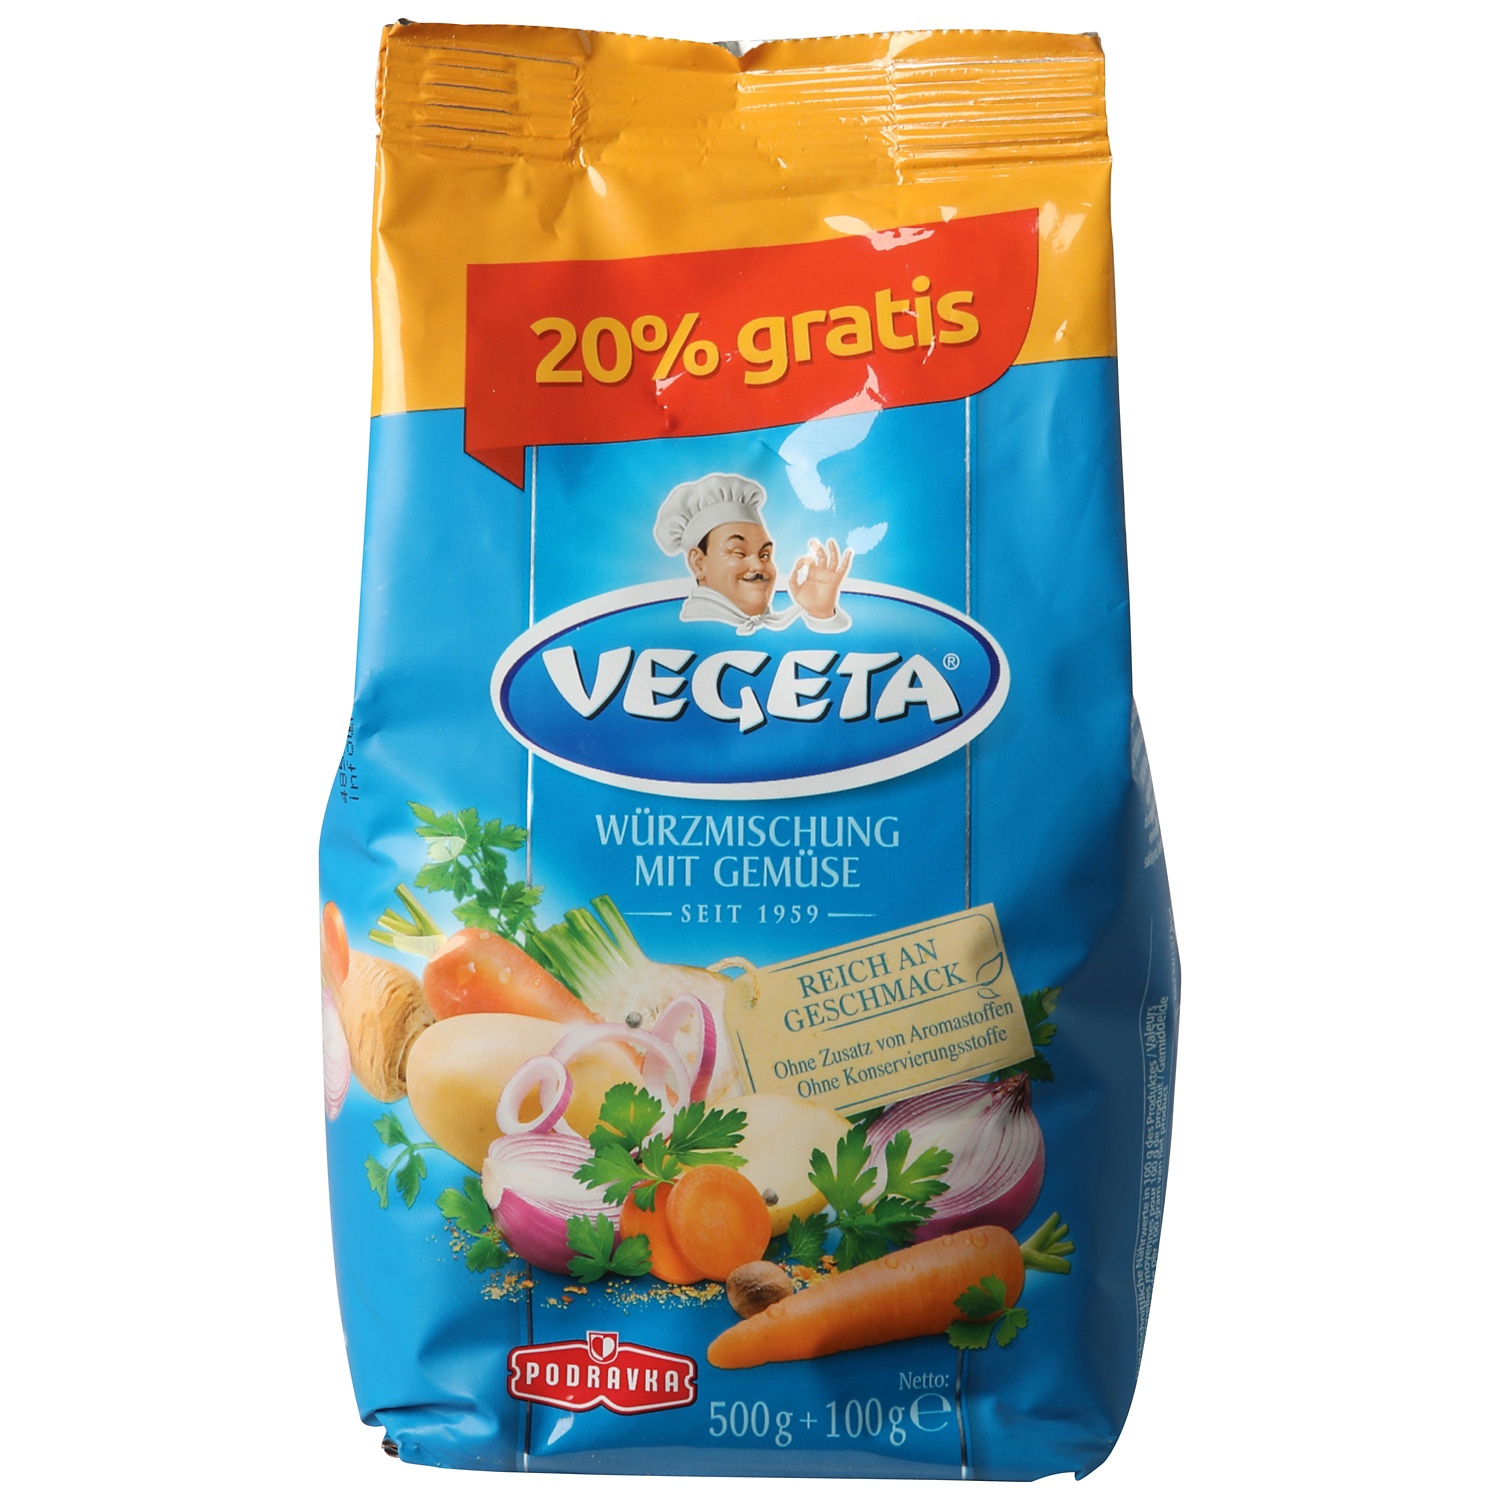 Vegeta Mélange d'épices avec légumes (500g) acheter à prix réduit